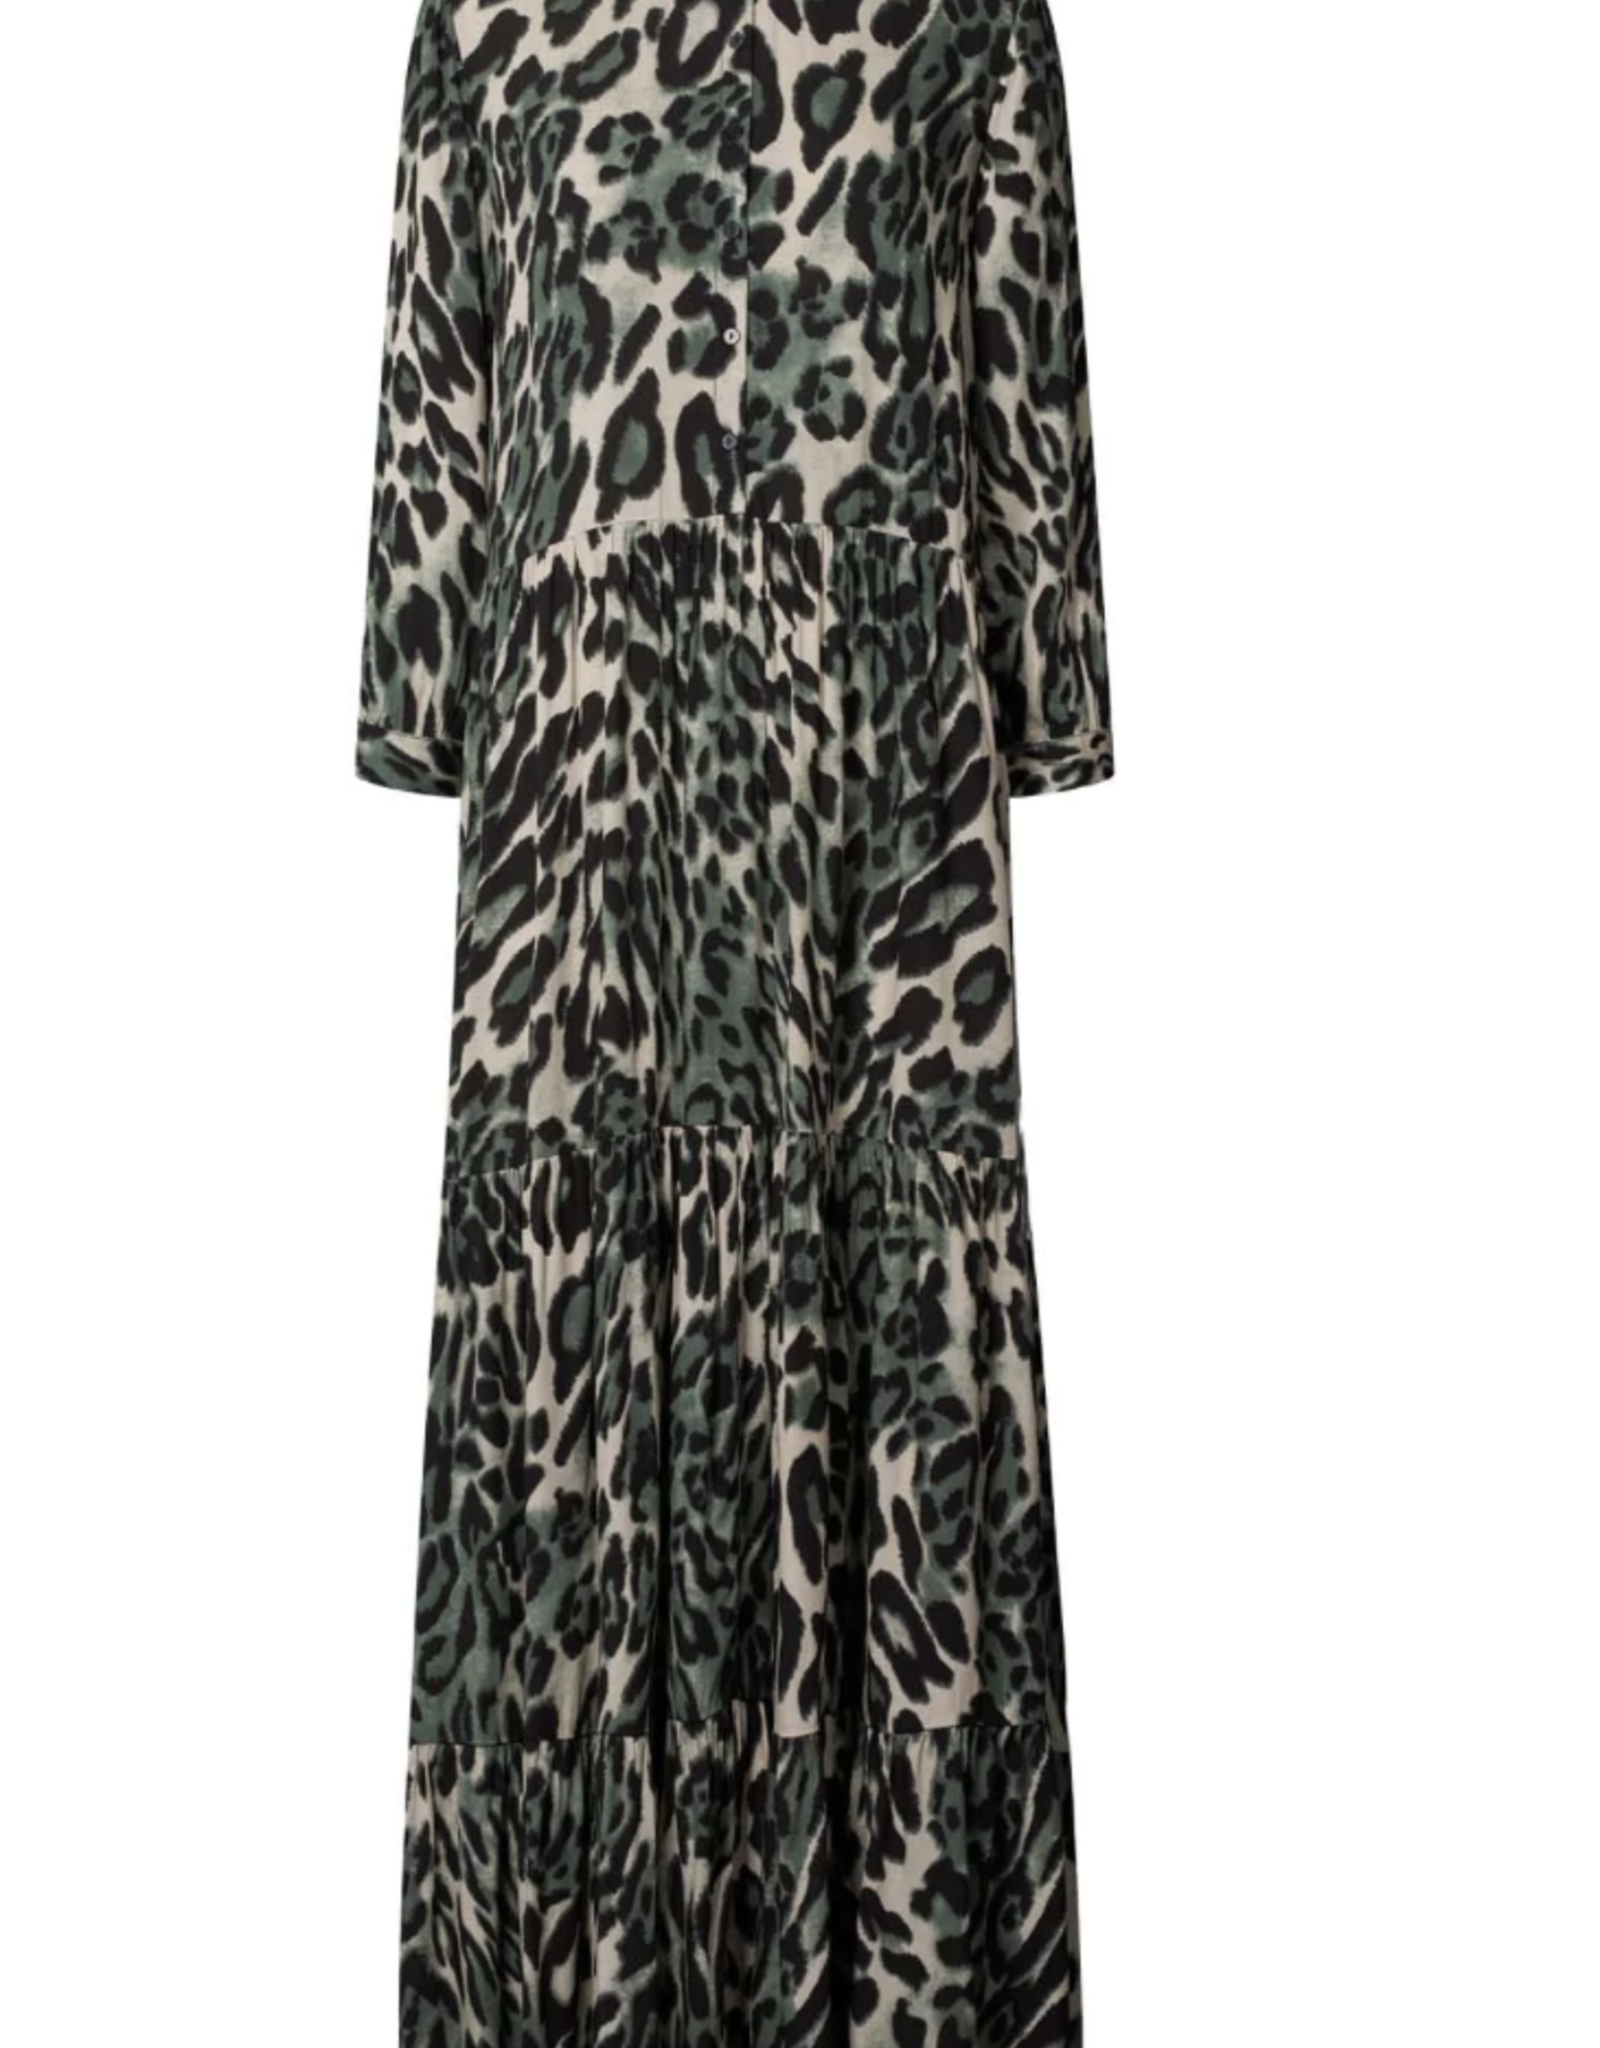 Lolly's Laundry Nee Dress leopard